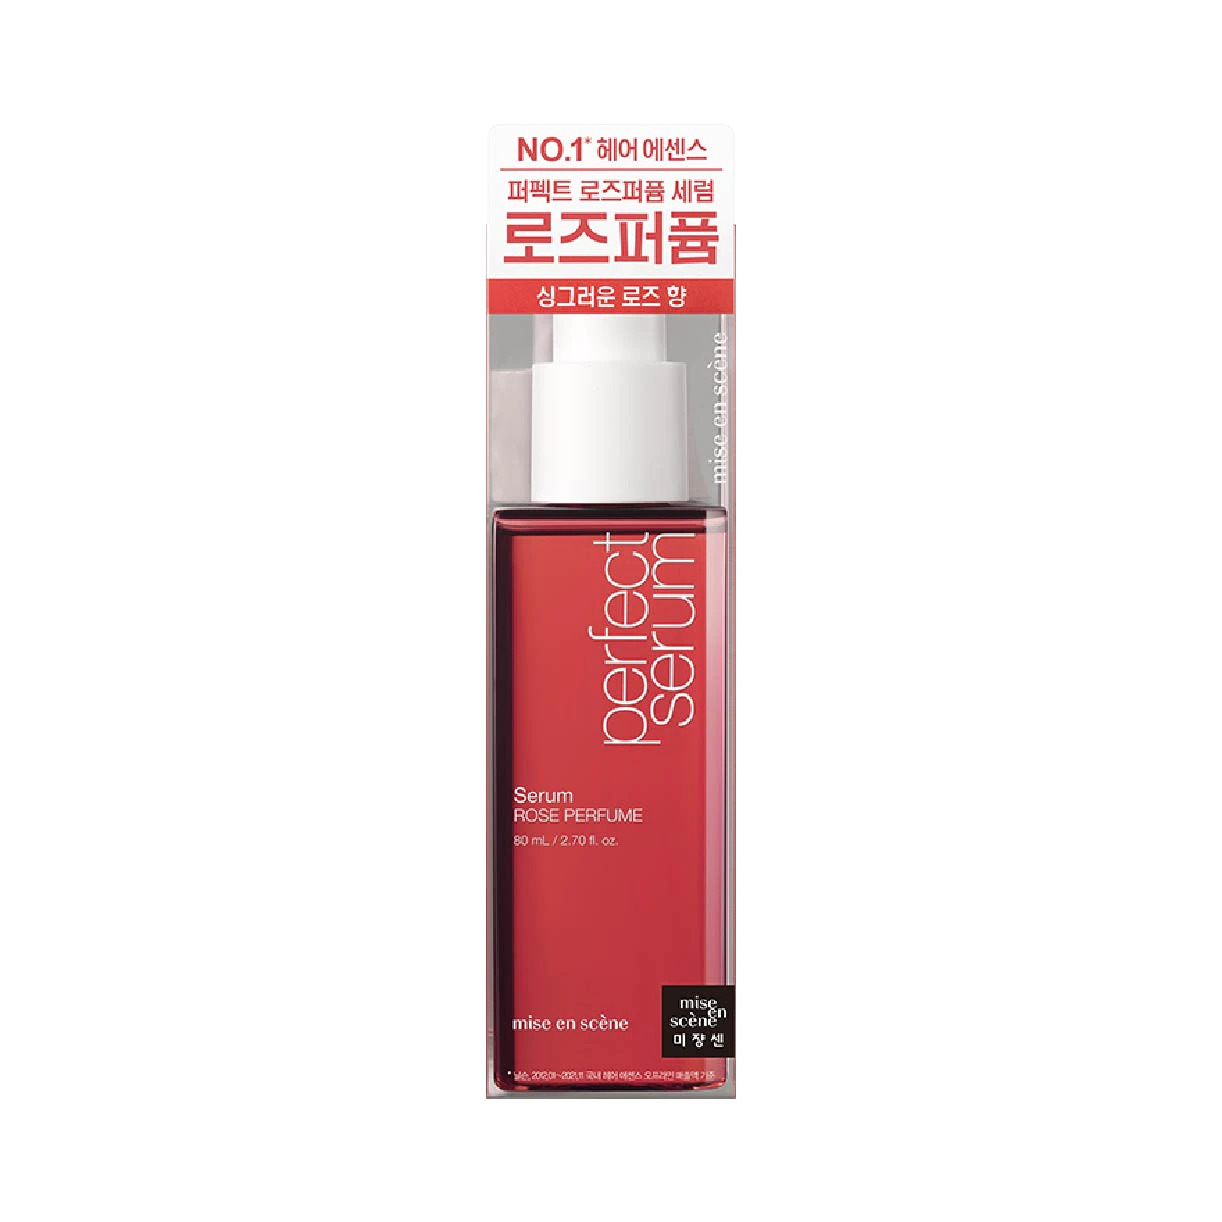 Mise en Scene Perfect Rose Perfume Serum 80ml - New Packaging